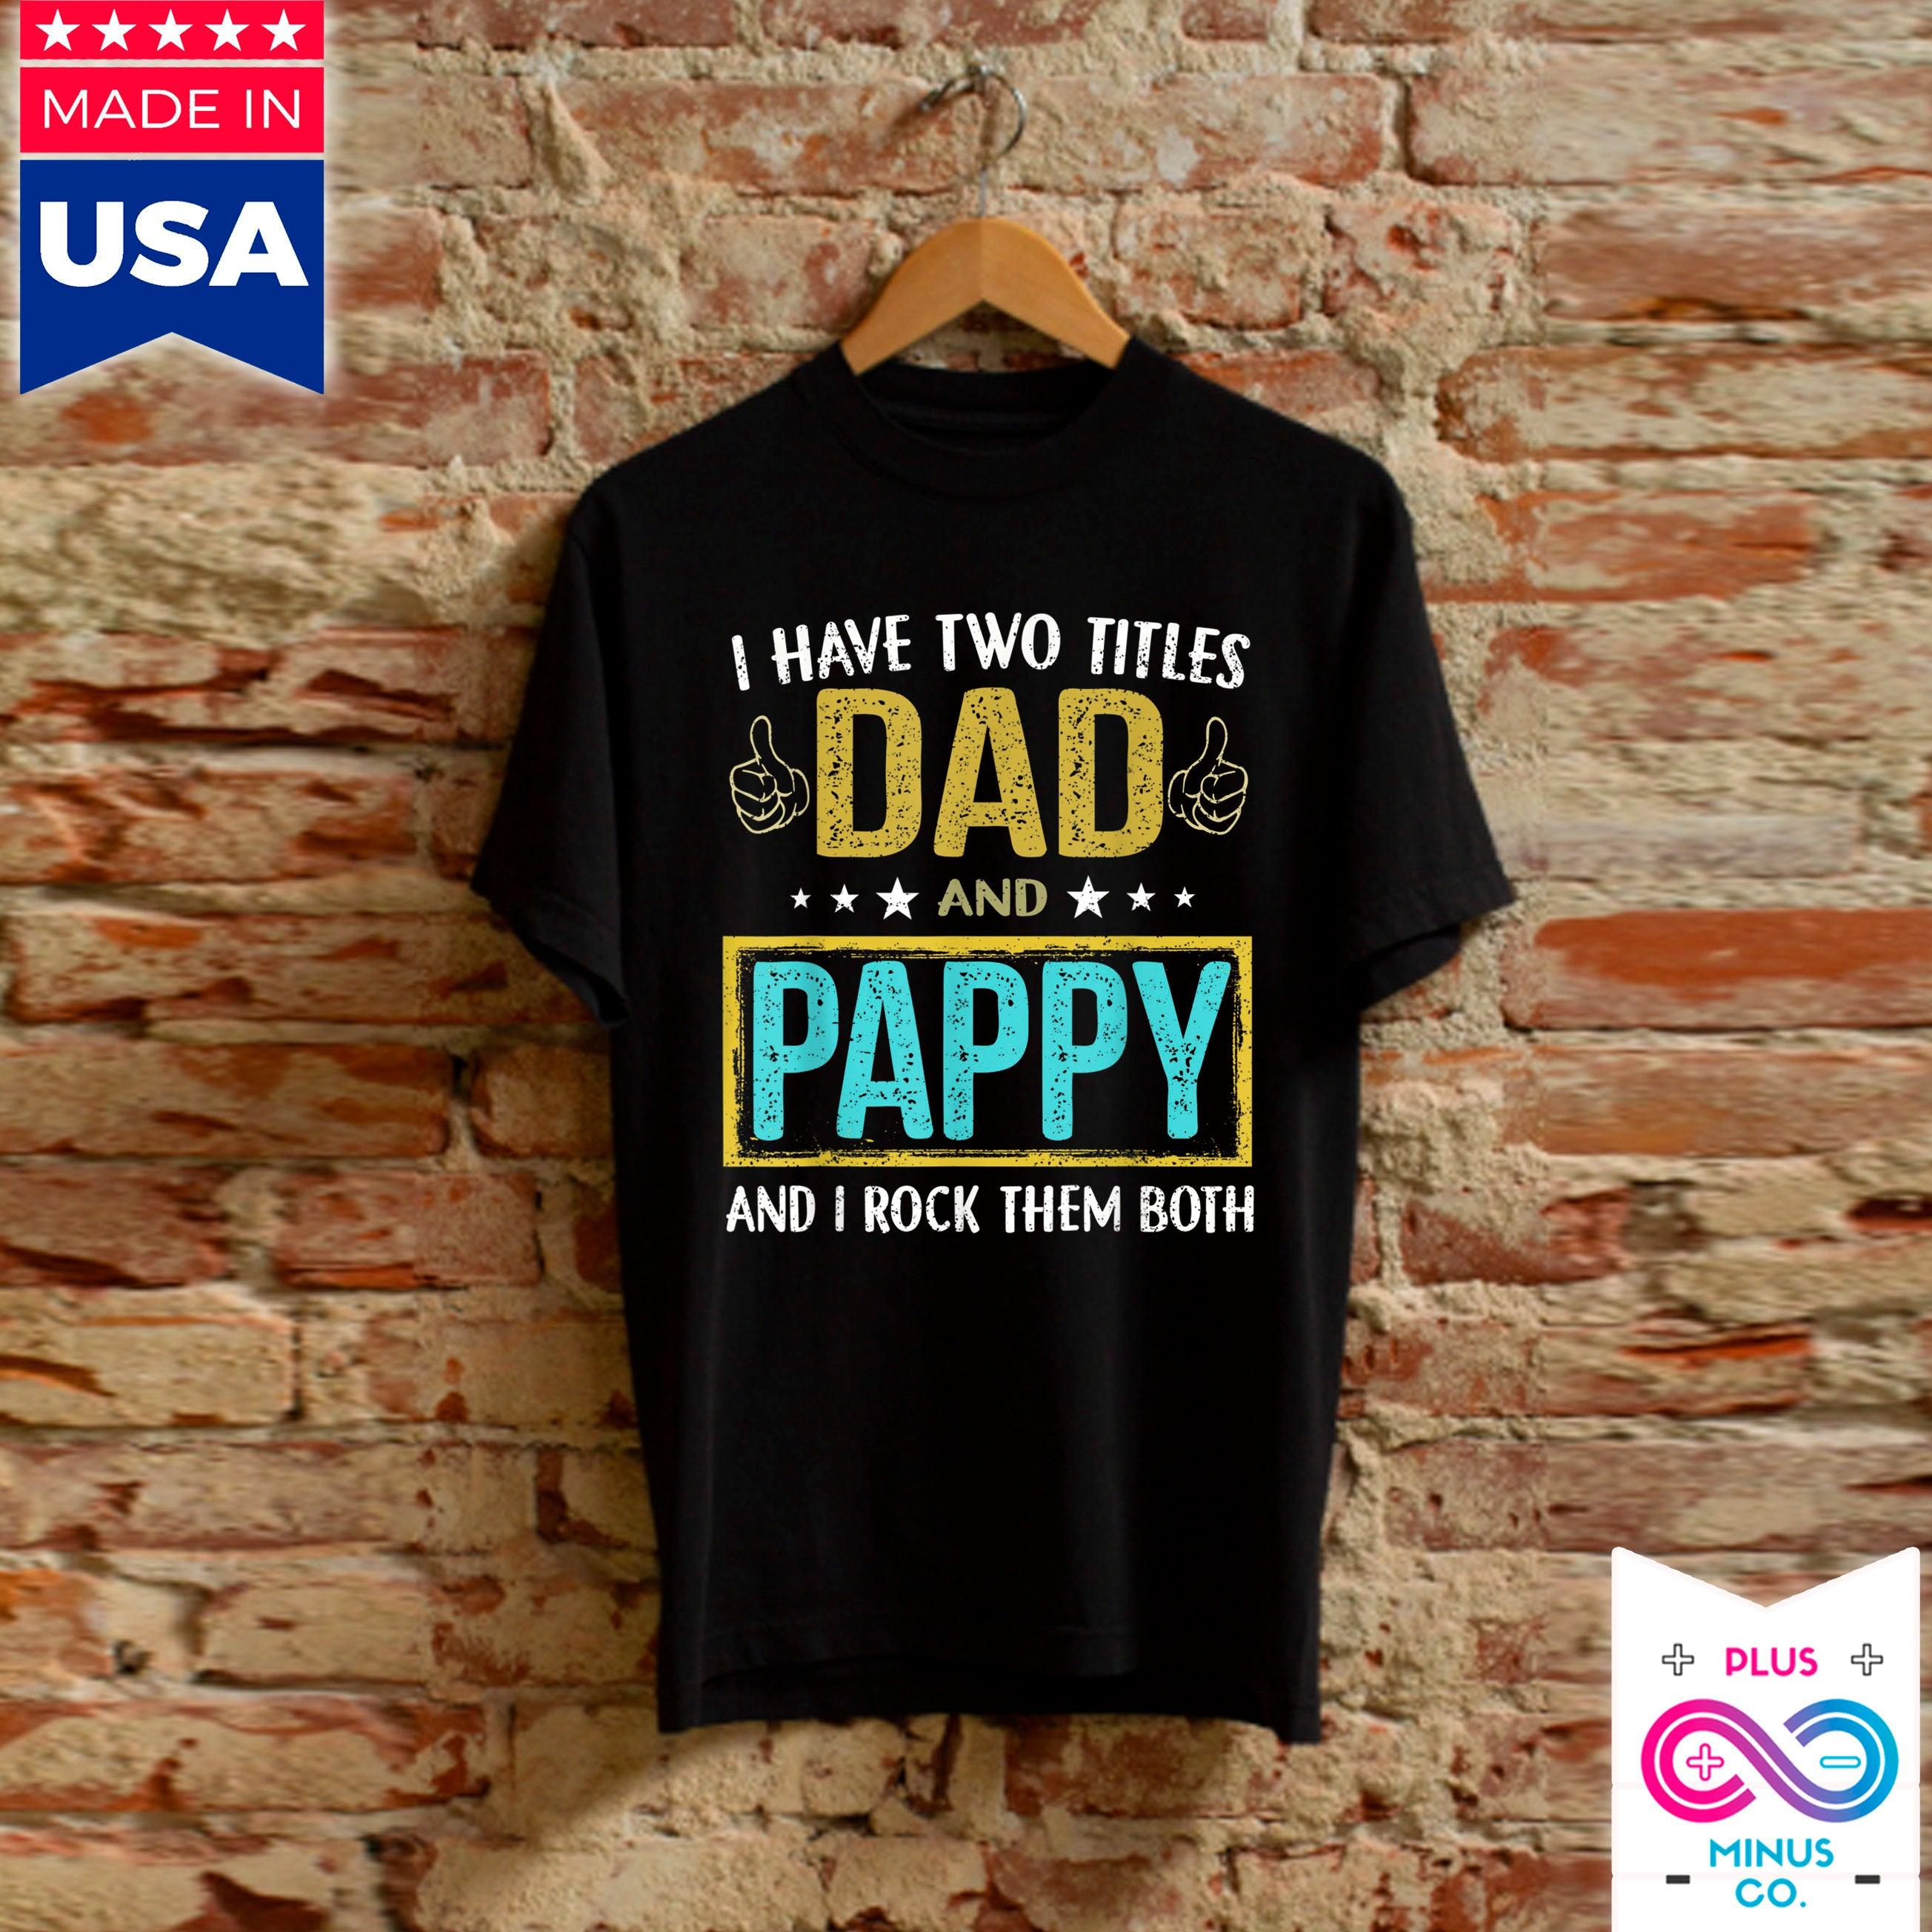 Masculino I Have Two Titles Dad And Pappy - Presentes para o pai Camisetas, presentes de filha para pai, presente de dia dos pais, presentes de filho para pai - plusminusco.com